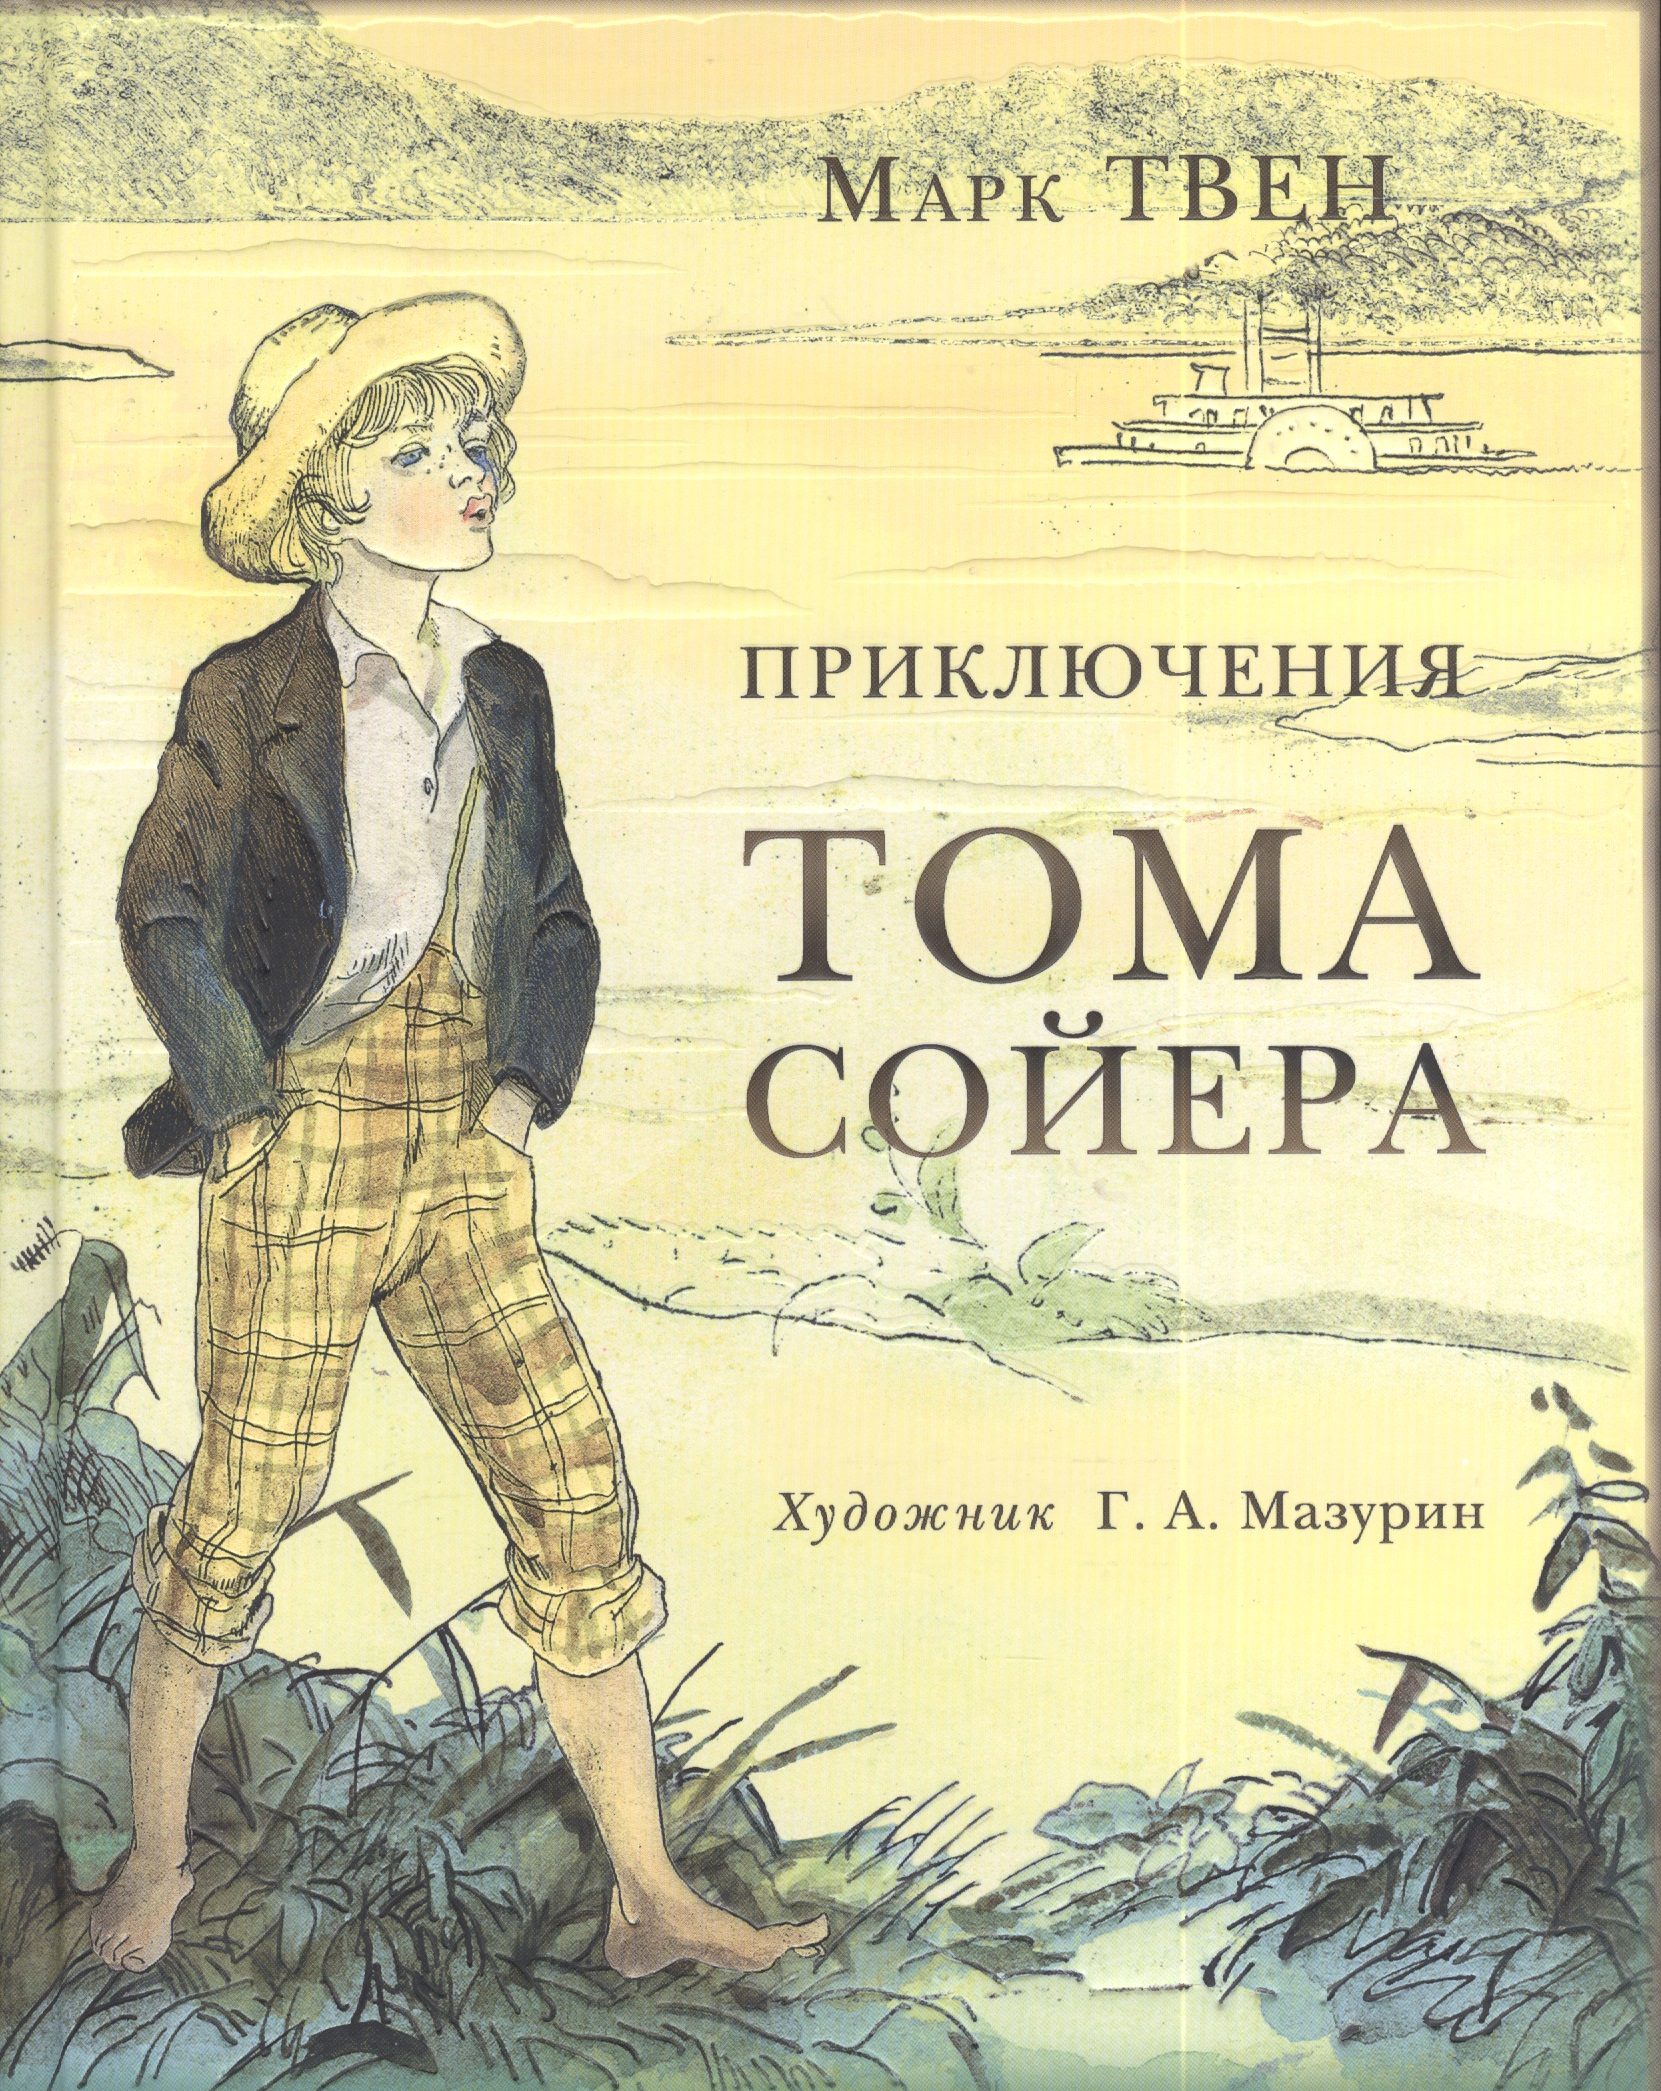 Сказку приключения тома. 3 М Твен приключения Тома Сойера. Приключения Тома Сойера марка от Твена.